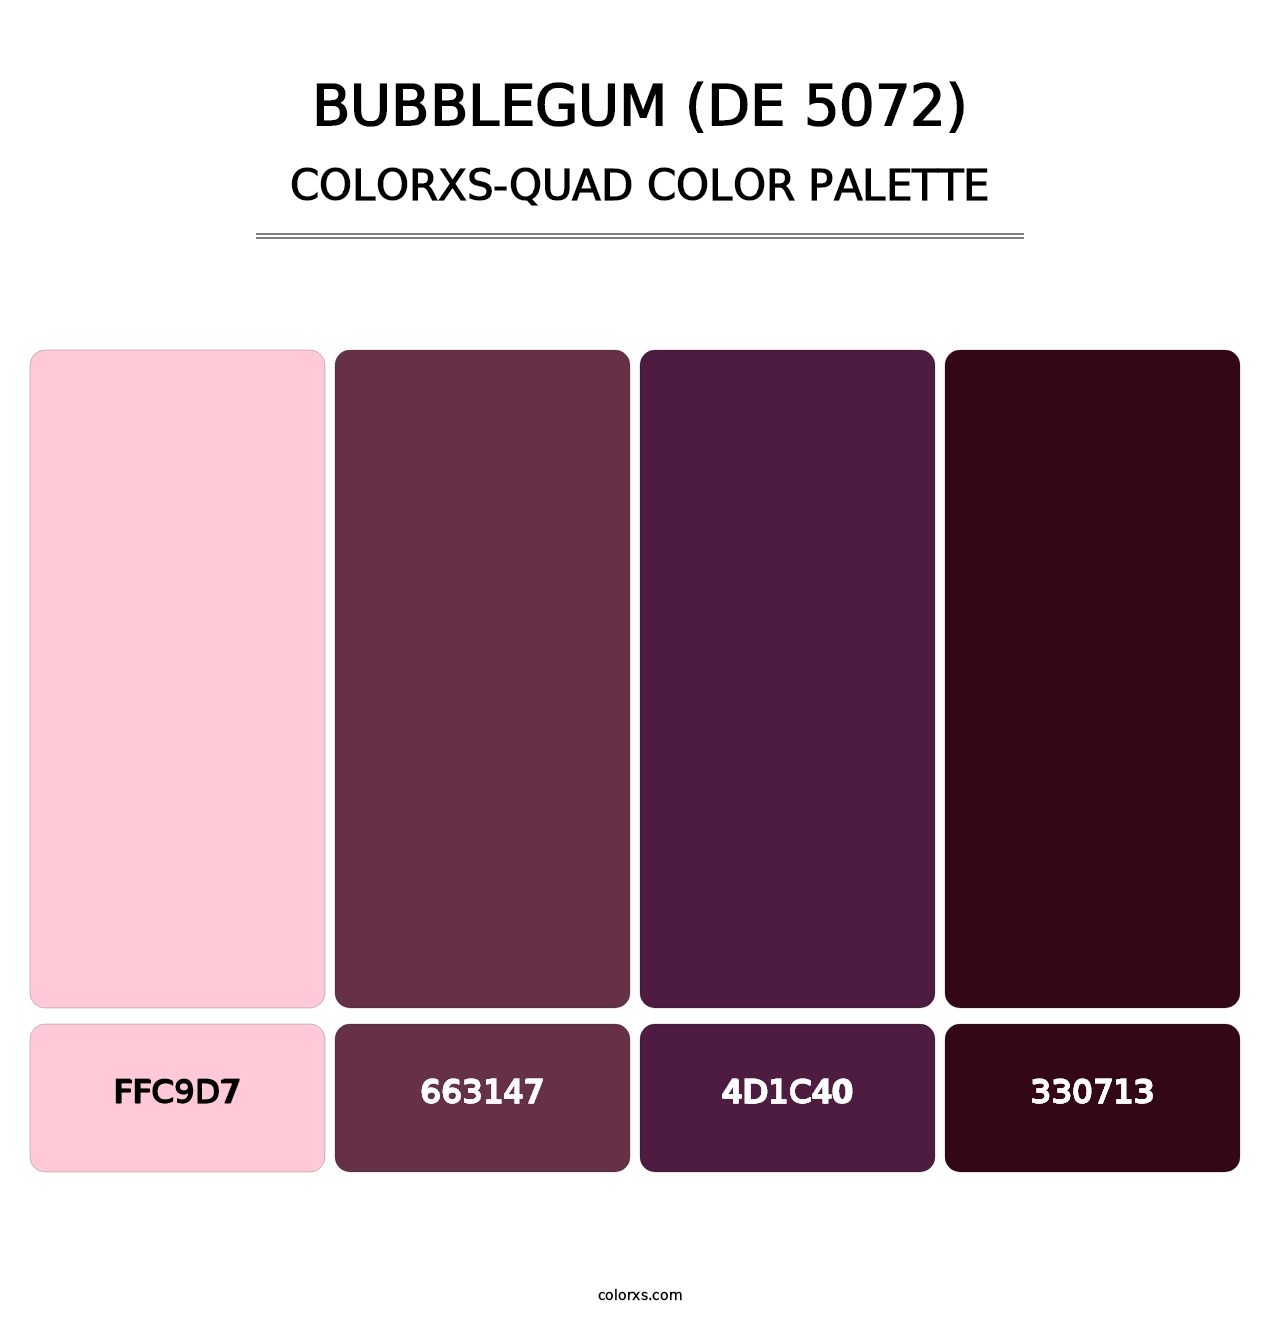 Bubblegum (DE 5072) - Colorxs Quad Palette